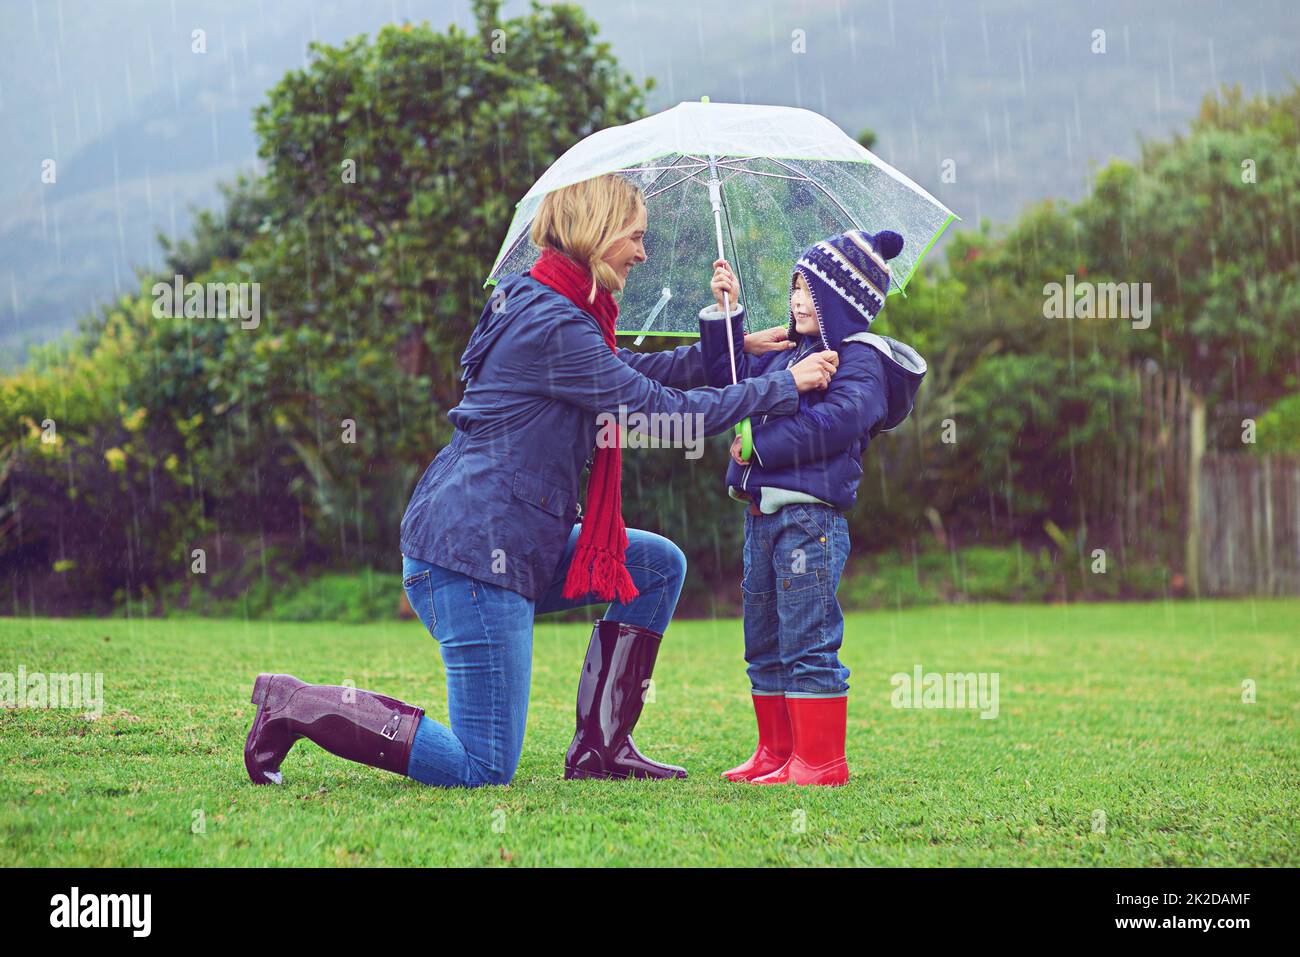 Achten Sie darauf, dass sie verdeckt sind. In voller Länge eine Mutter, die sicherstellt, dass ihr Sohn bedeckt ist, während er draußen im Regen ist. Stockfoto